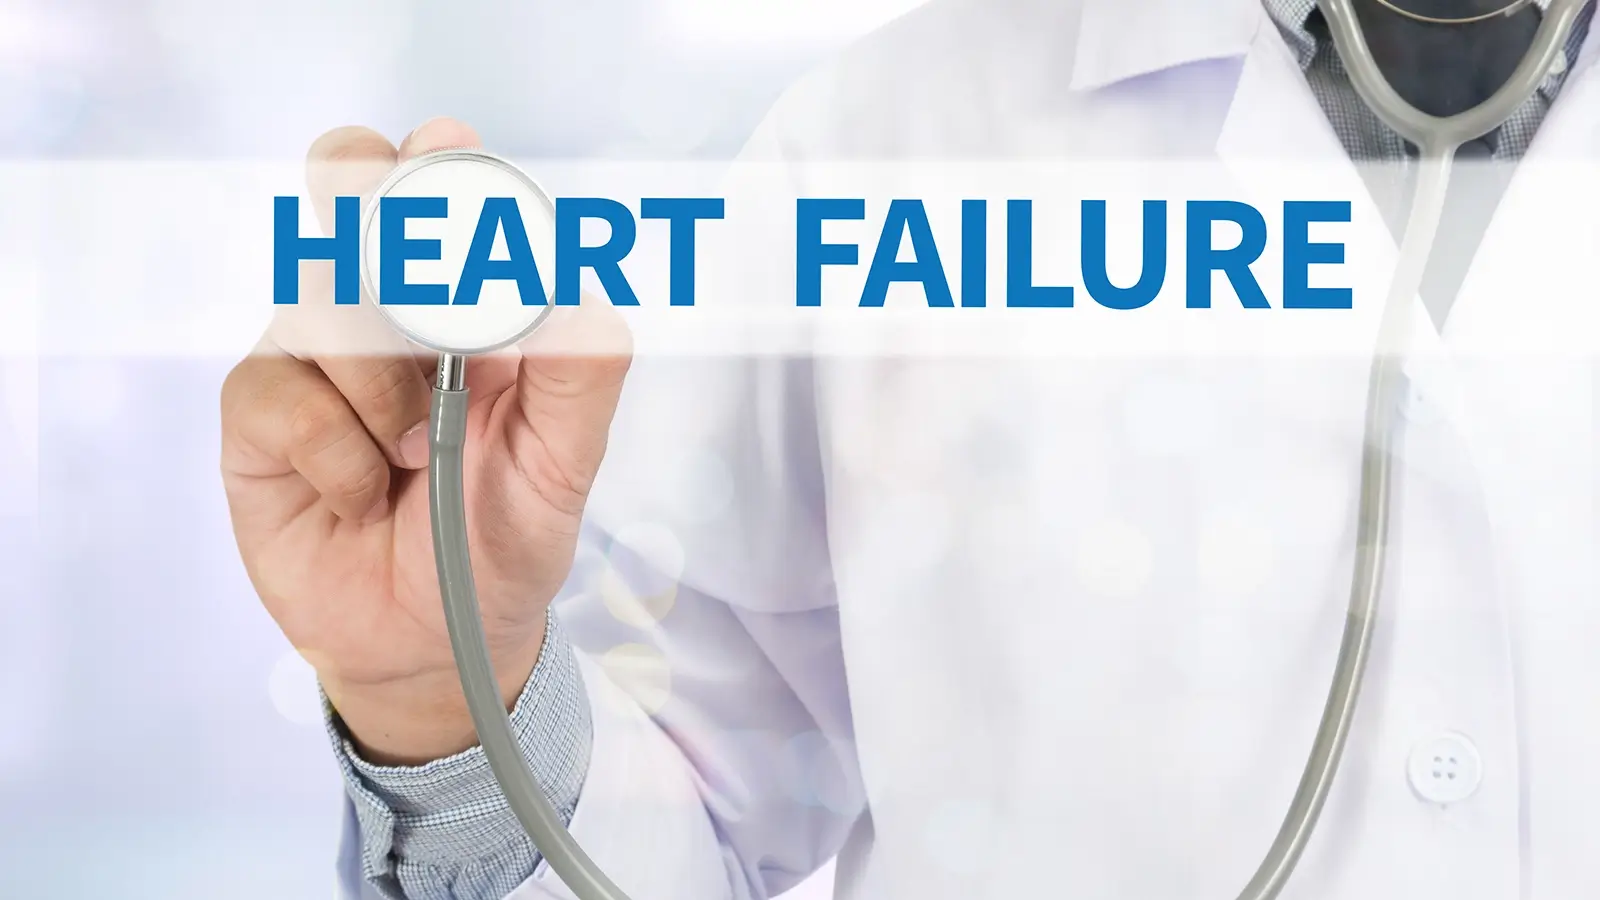 Heart Failure